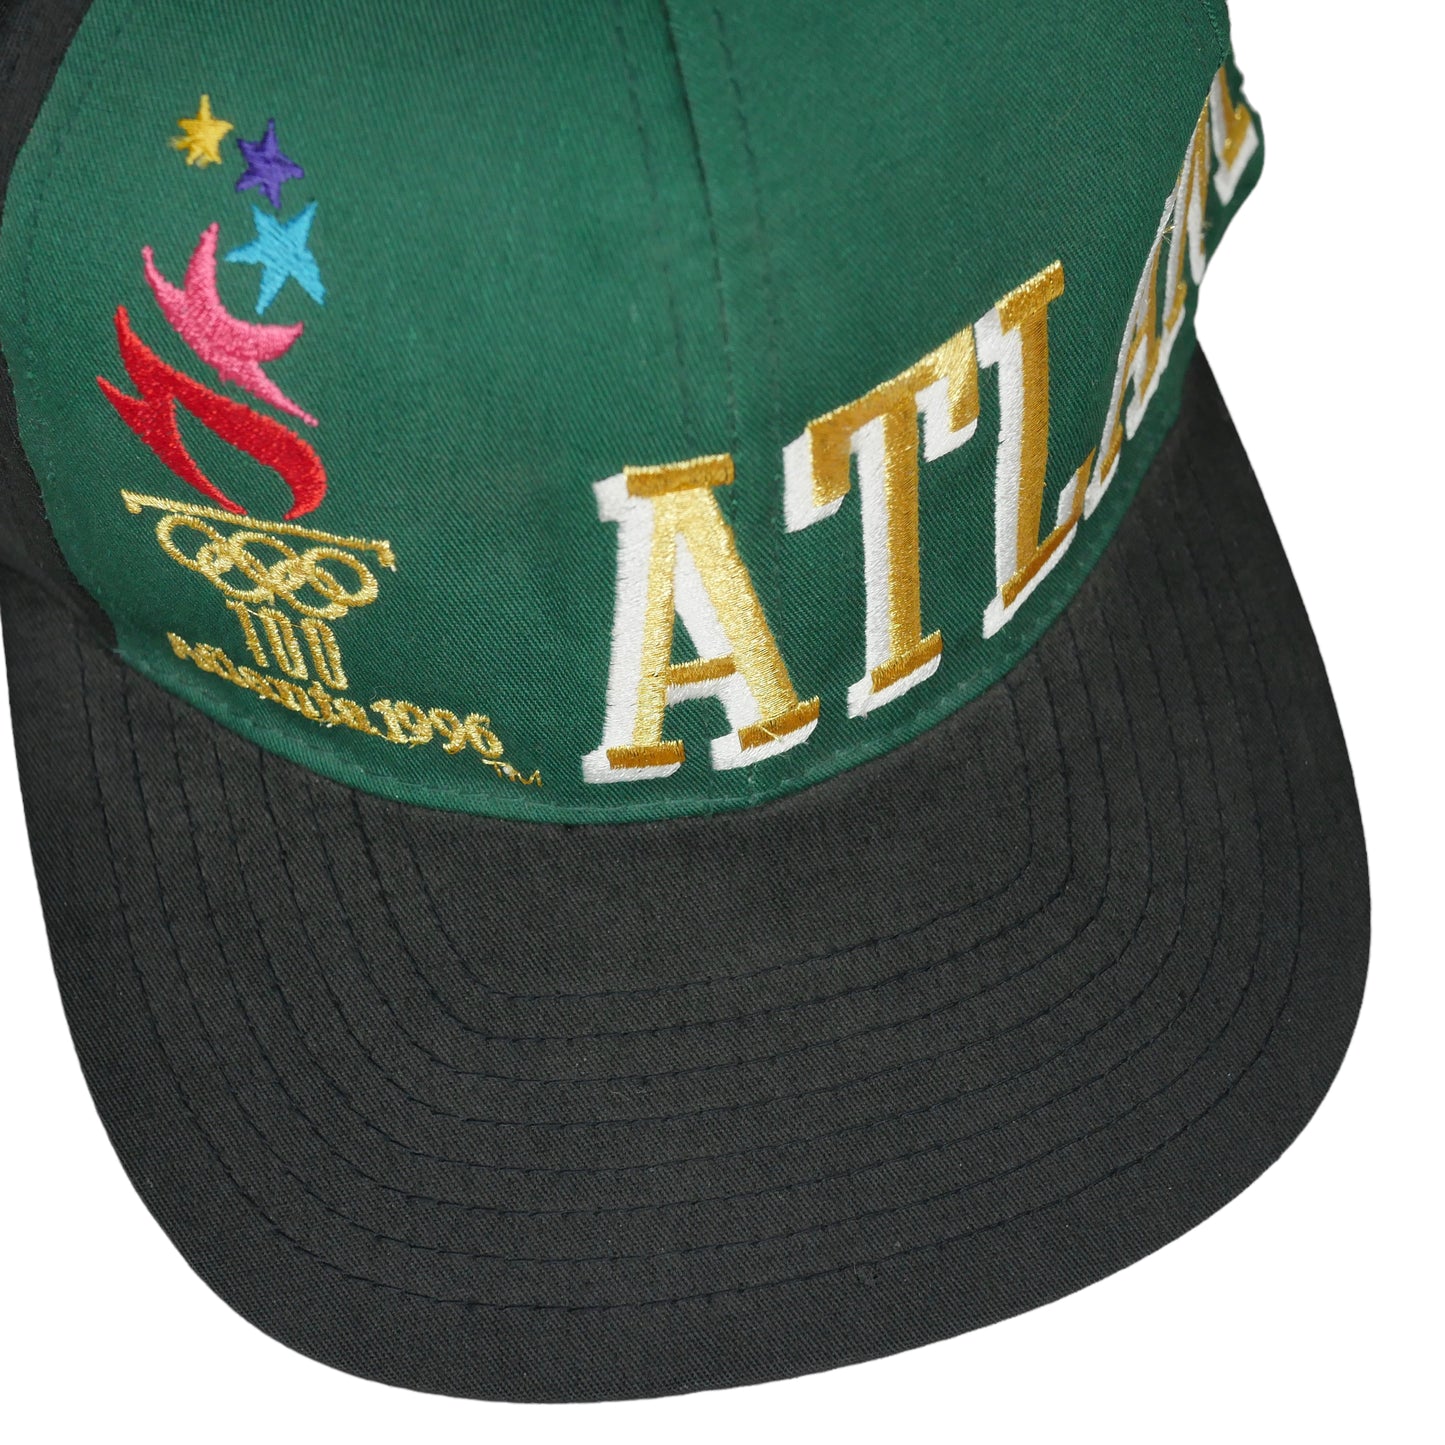 Atlanta 1996 Olympics Snapback Hat